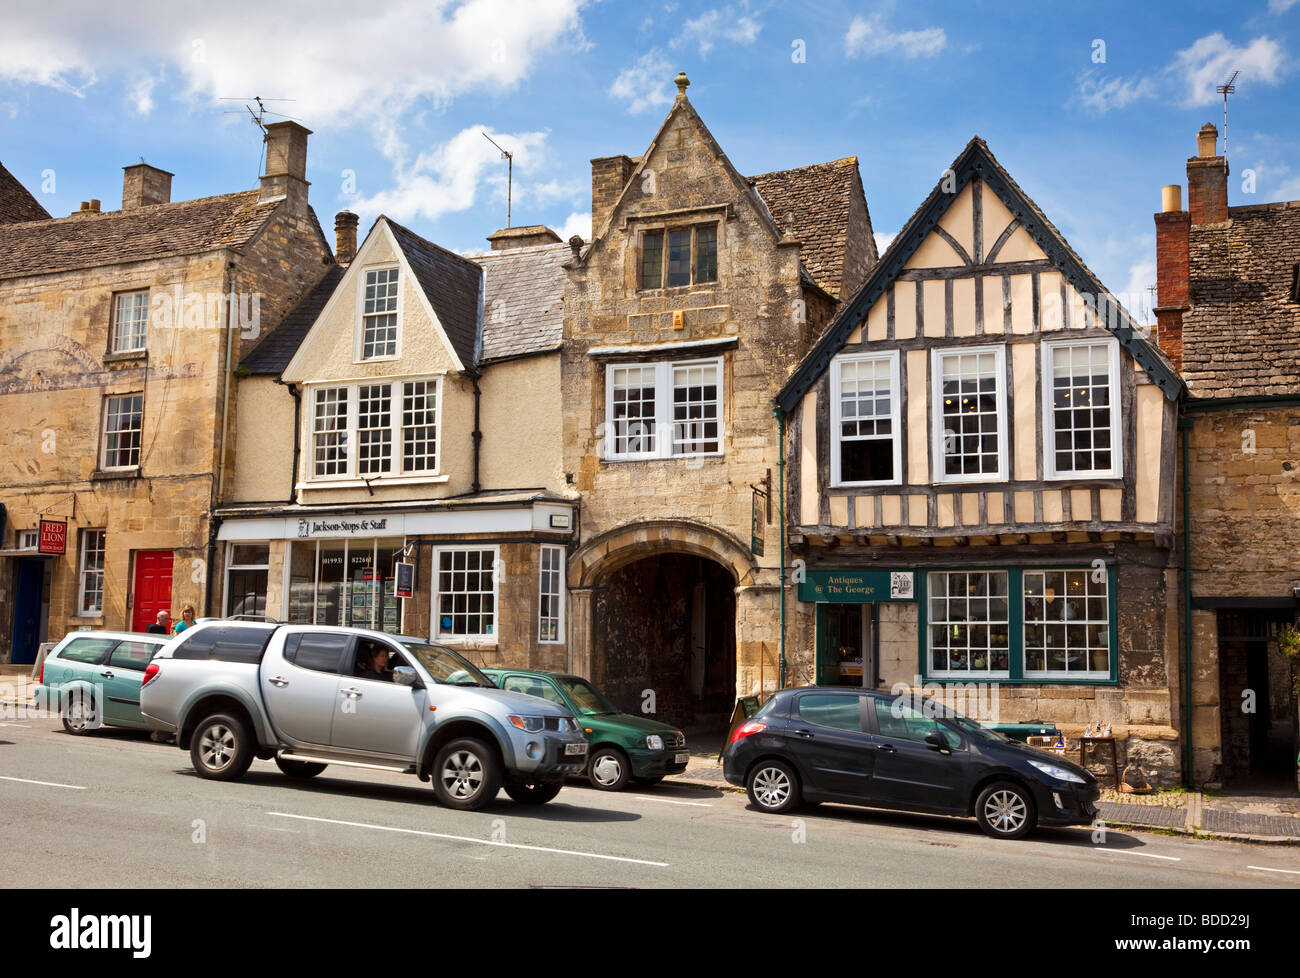 Alten Cotswold Stone und mittelalterlichen Fachwerkhaus Geschäfte in Burford, Oxfordshire, England, UK Stockfoto